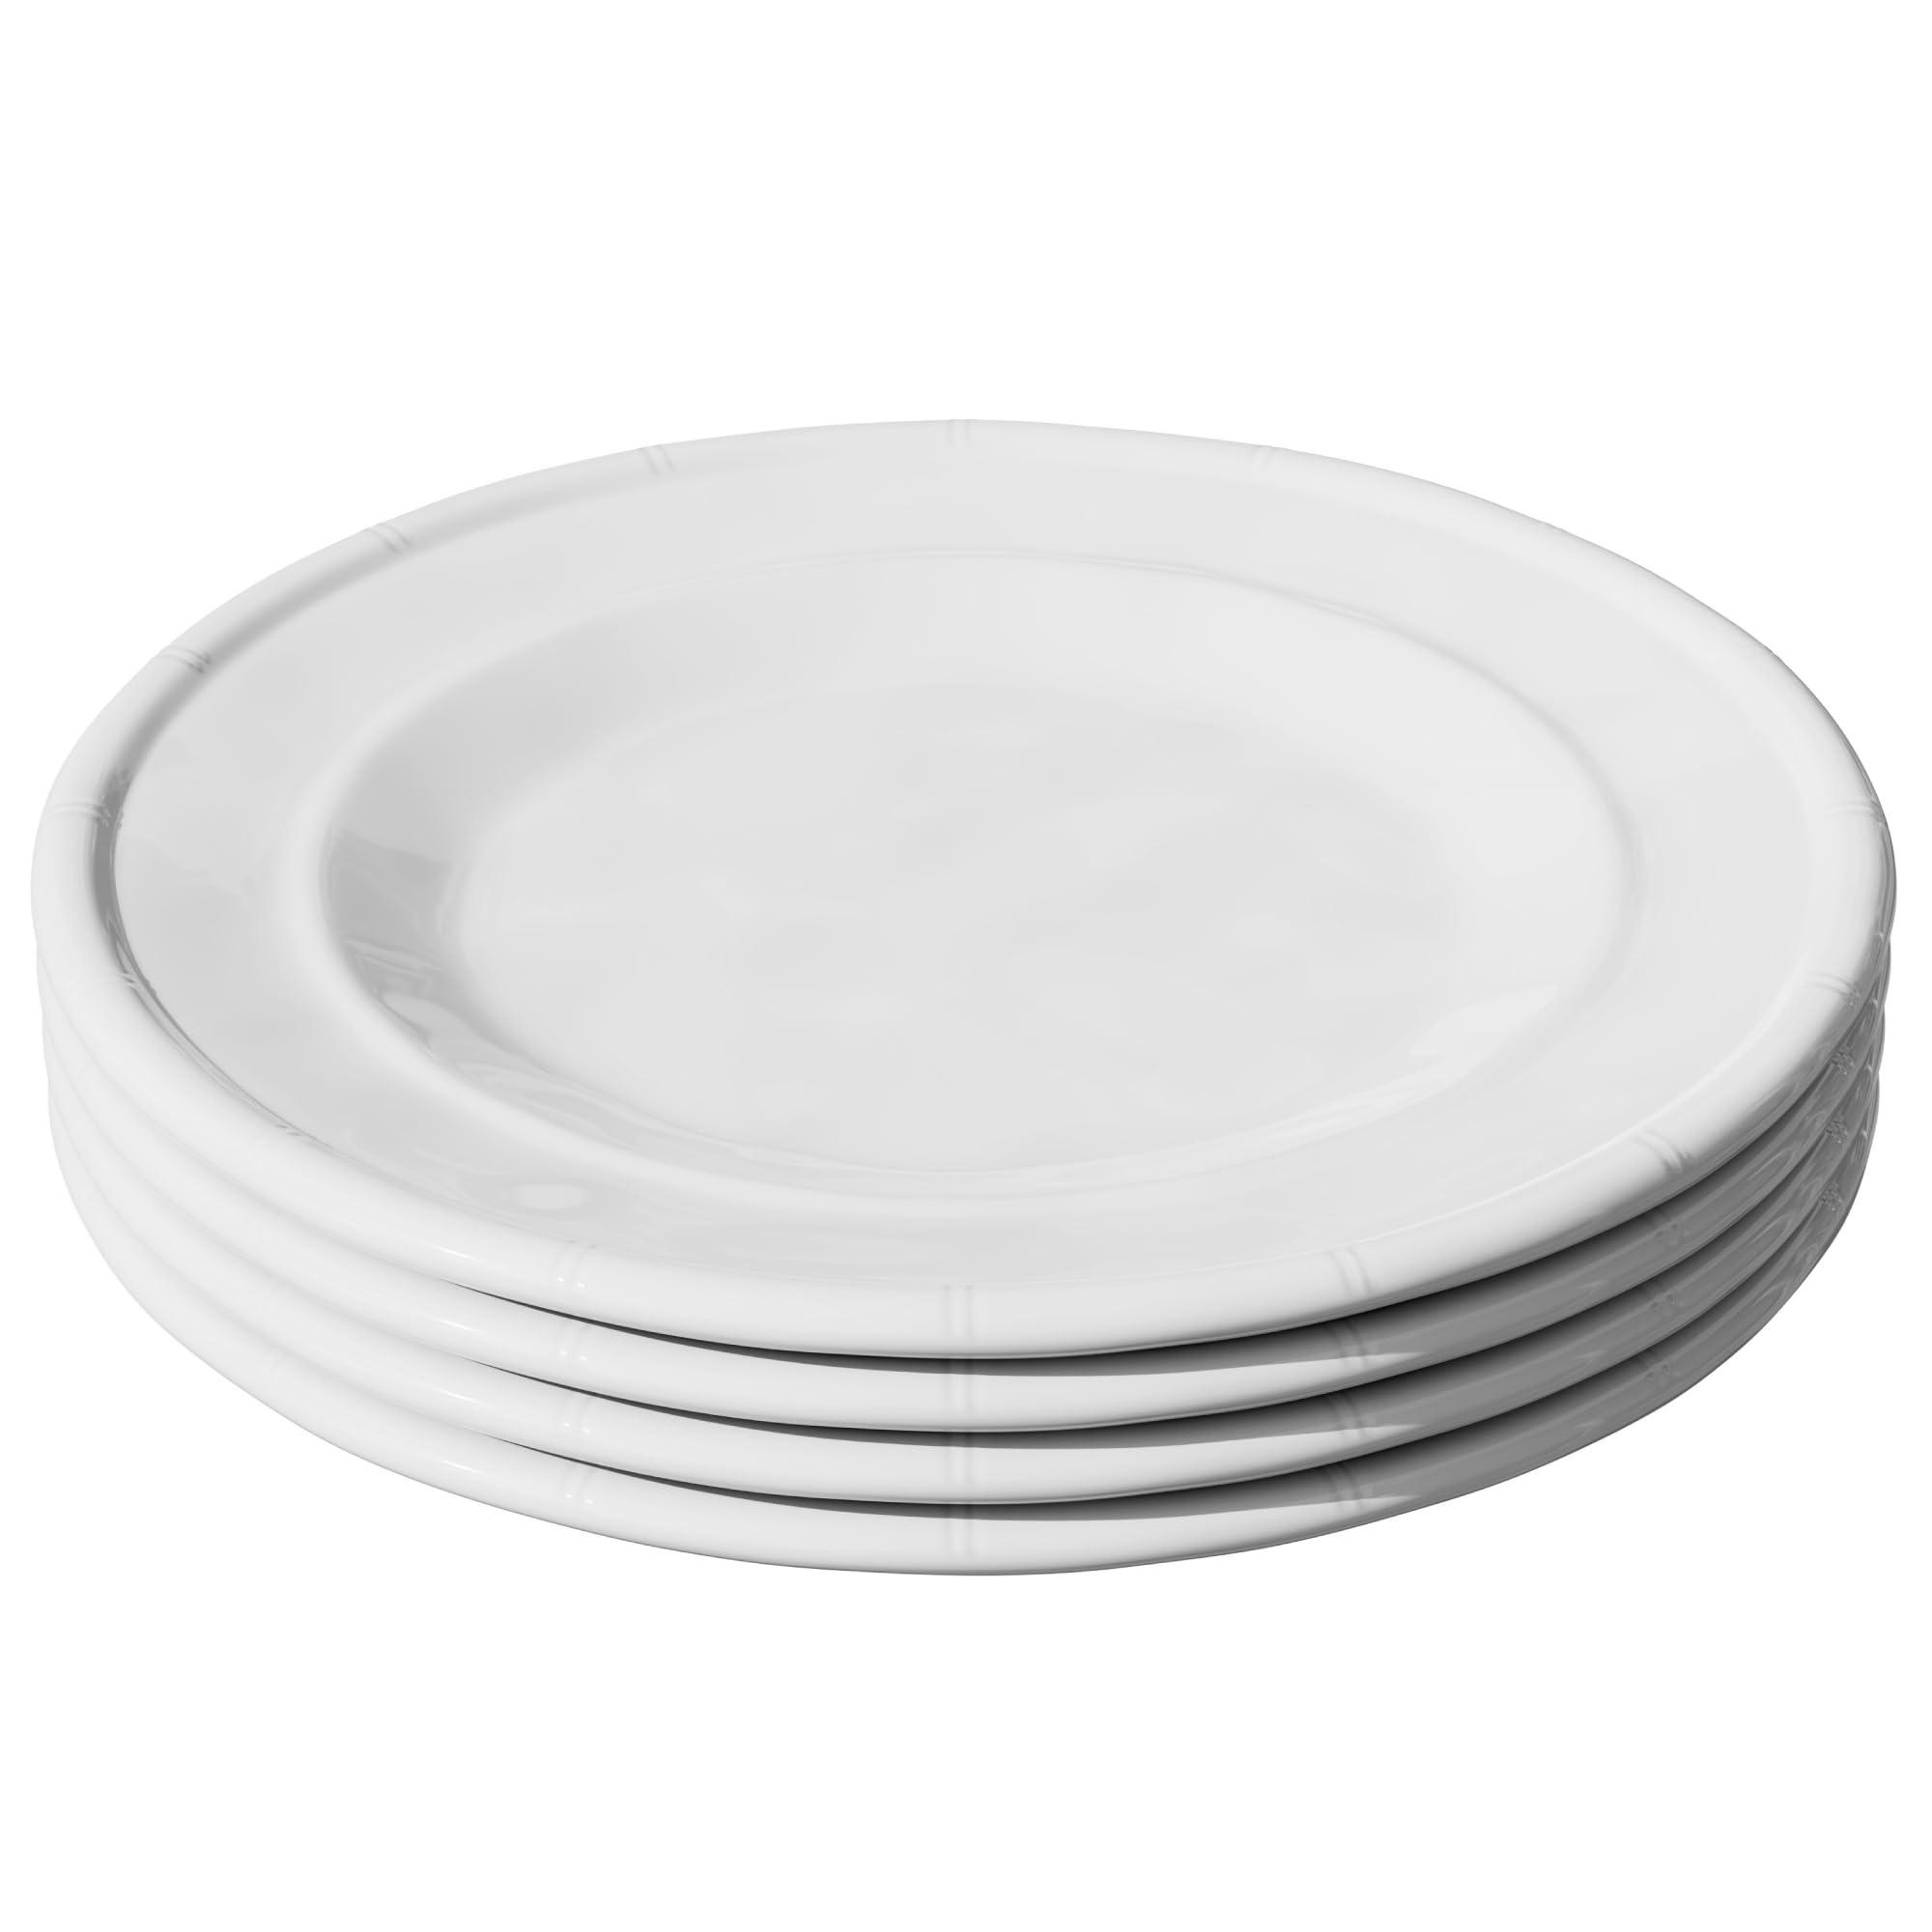 american atelier white melamine dinner plates, 11-inch melamine plates with bamboo edge design, dinner dish set for everyday 